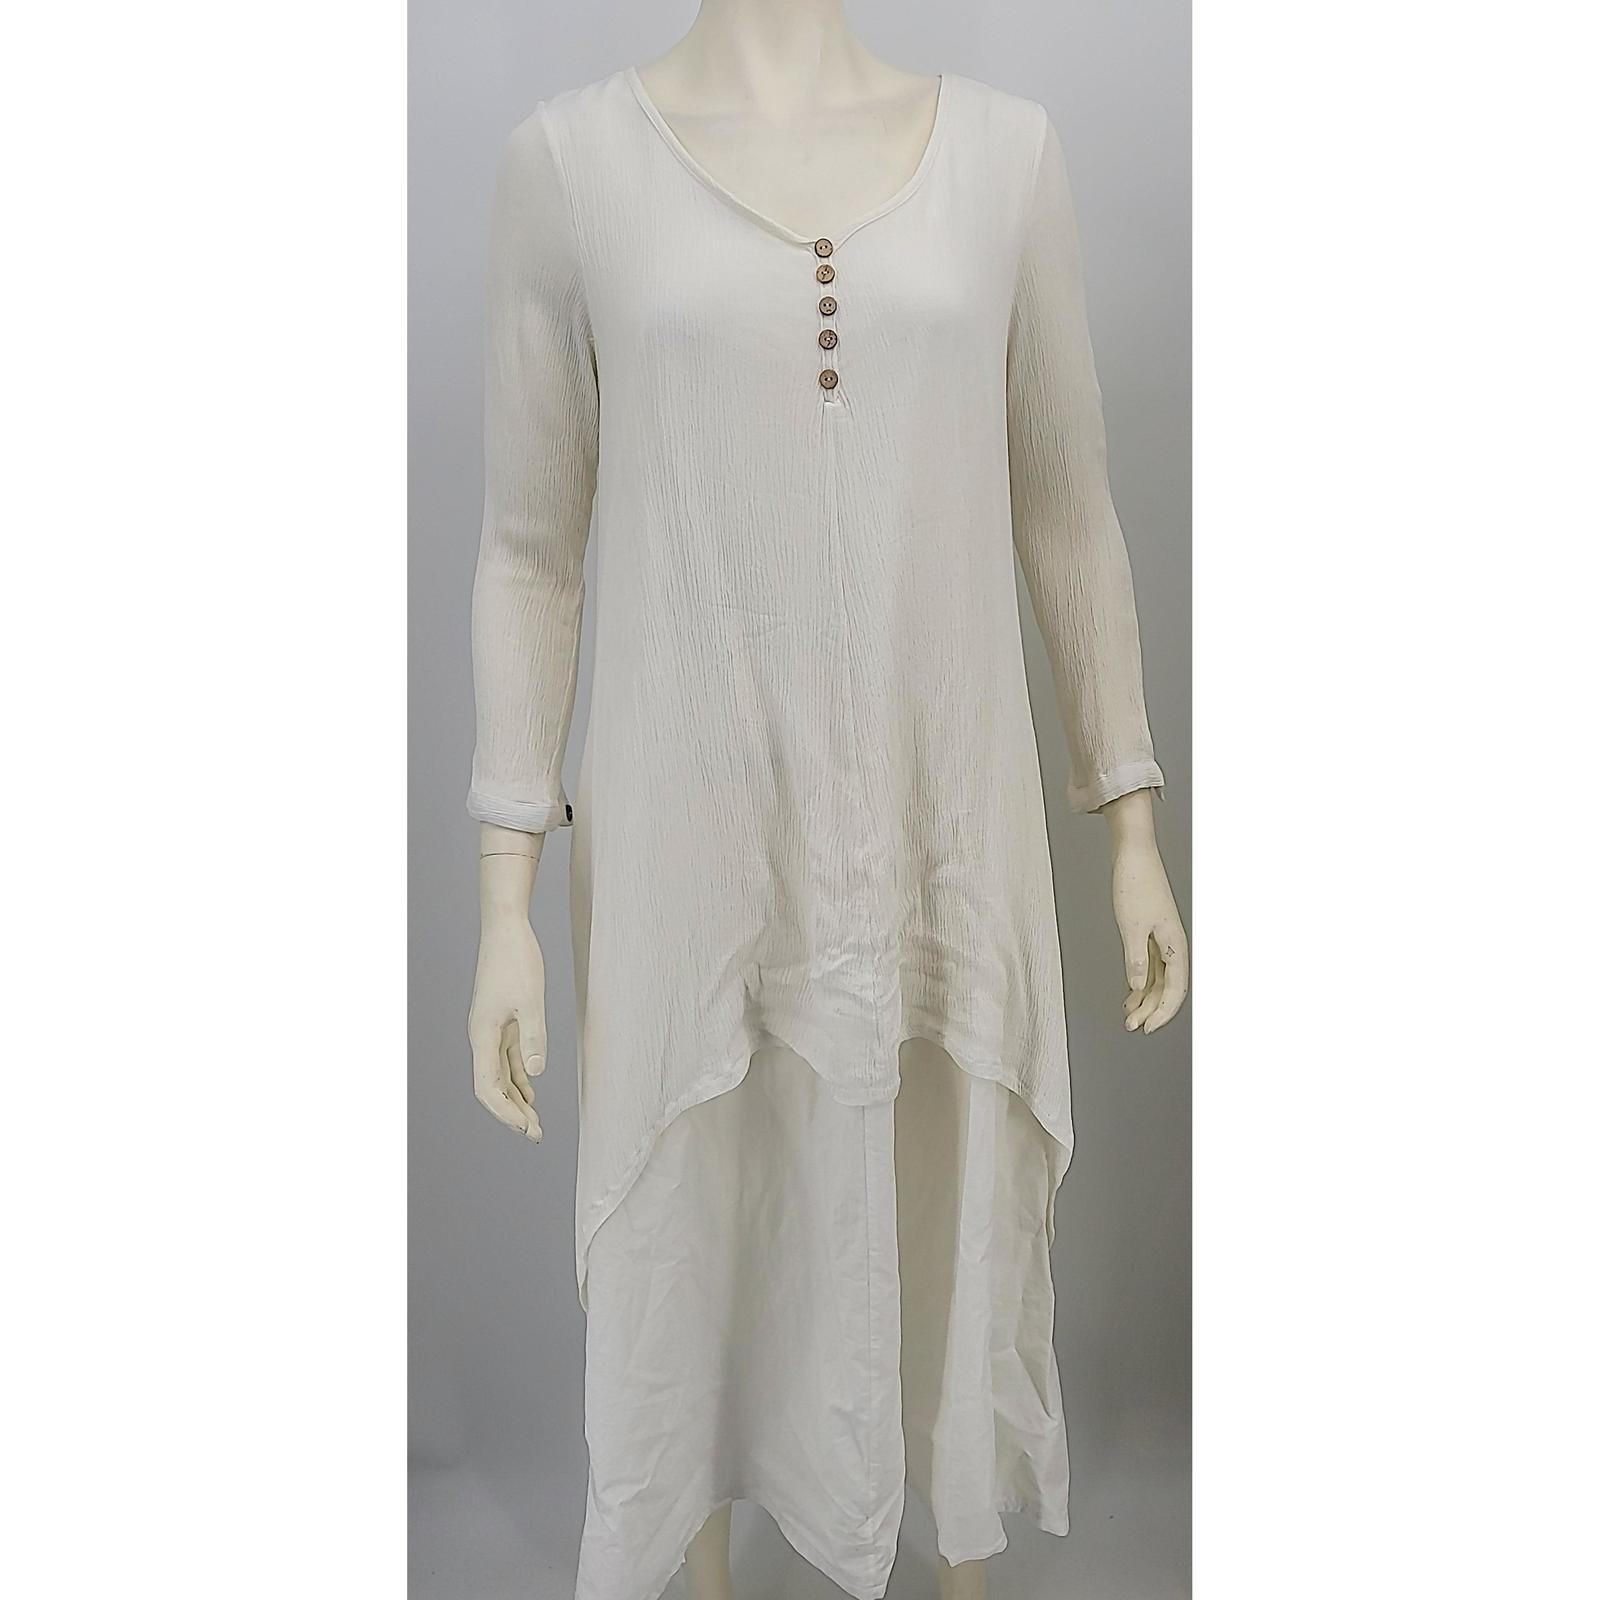 Primary image for ANSELF Womens Layered Dress Boho Long Sleeve white, Size Medium